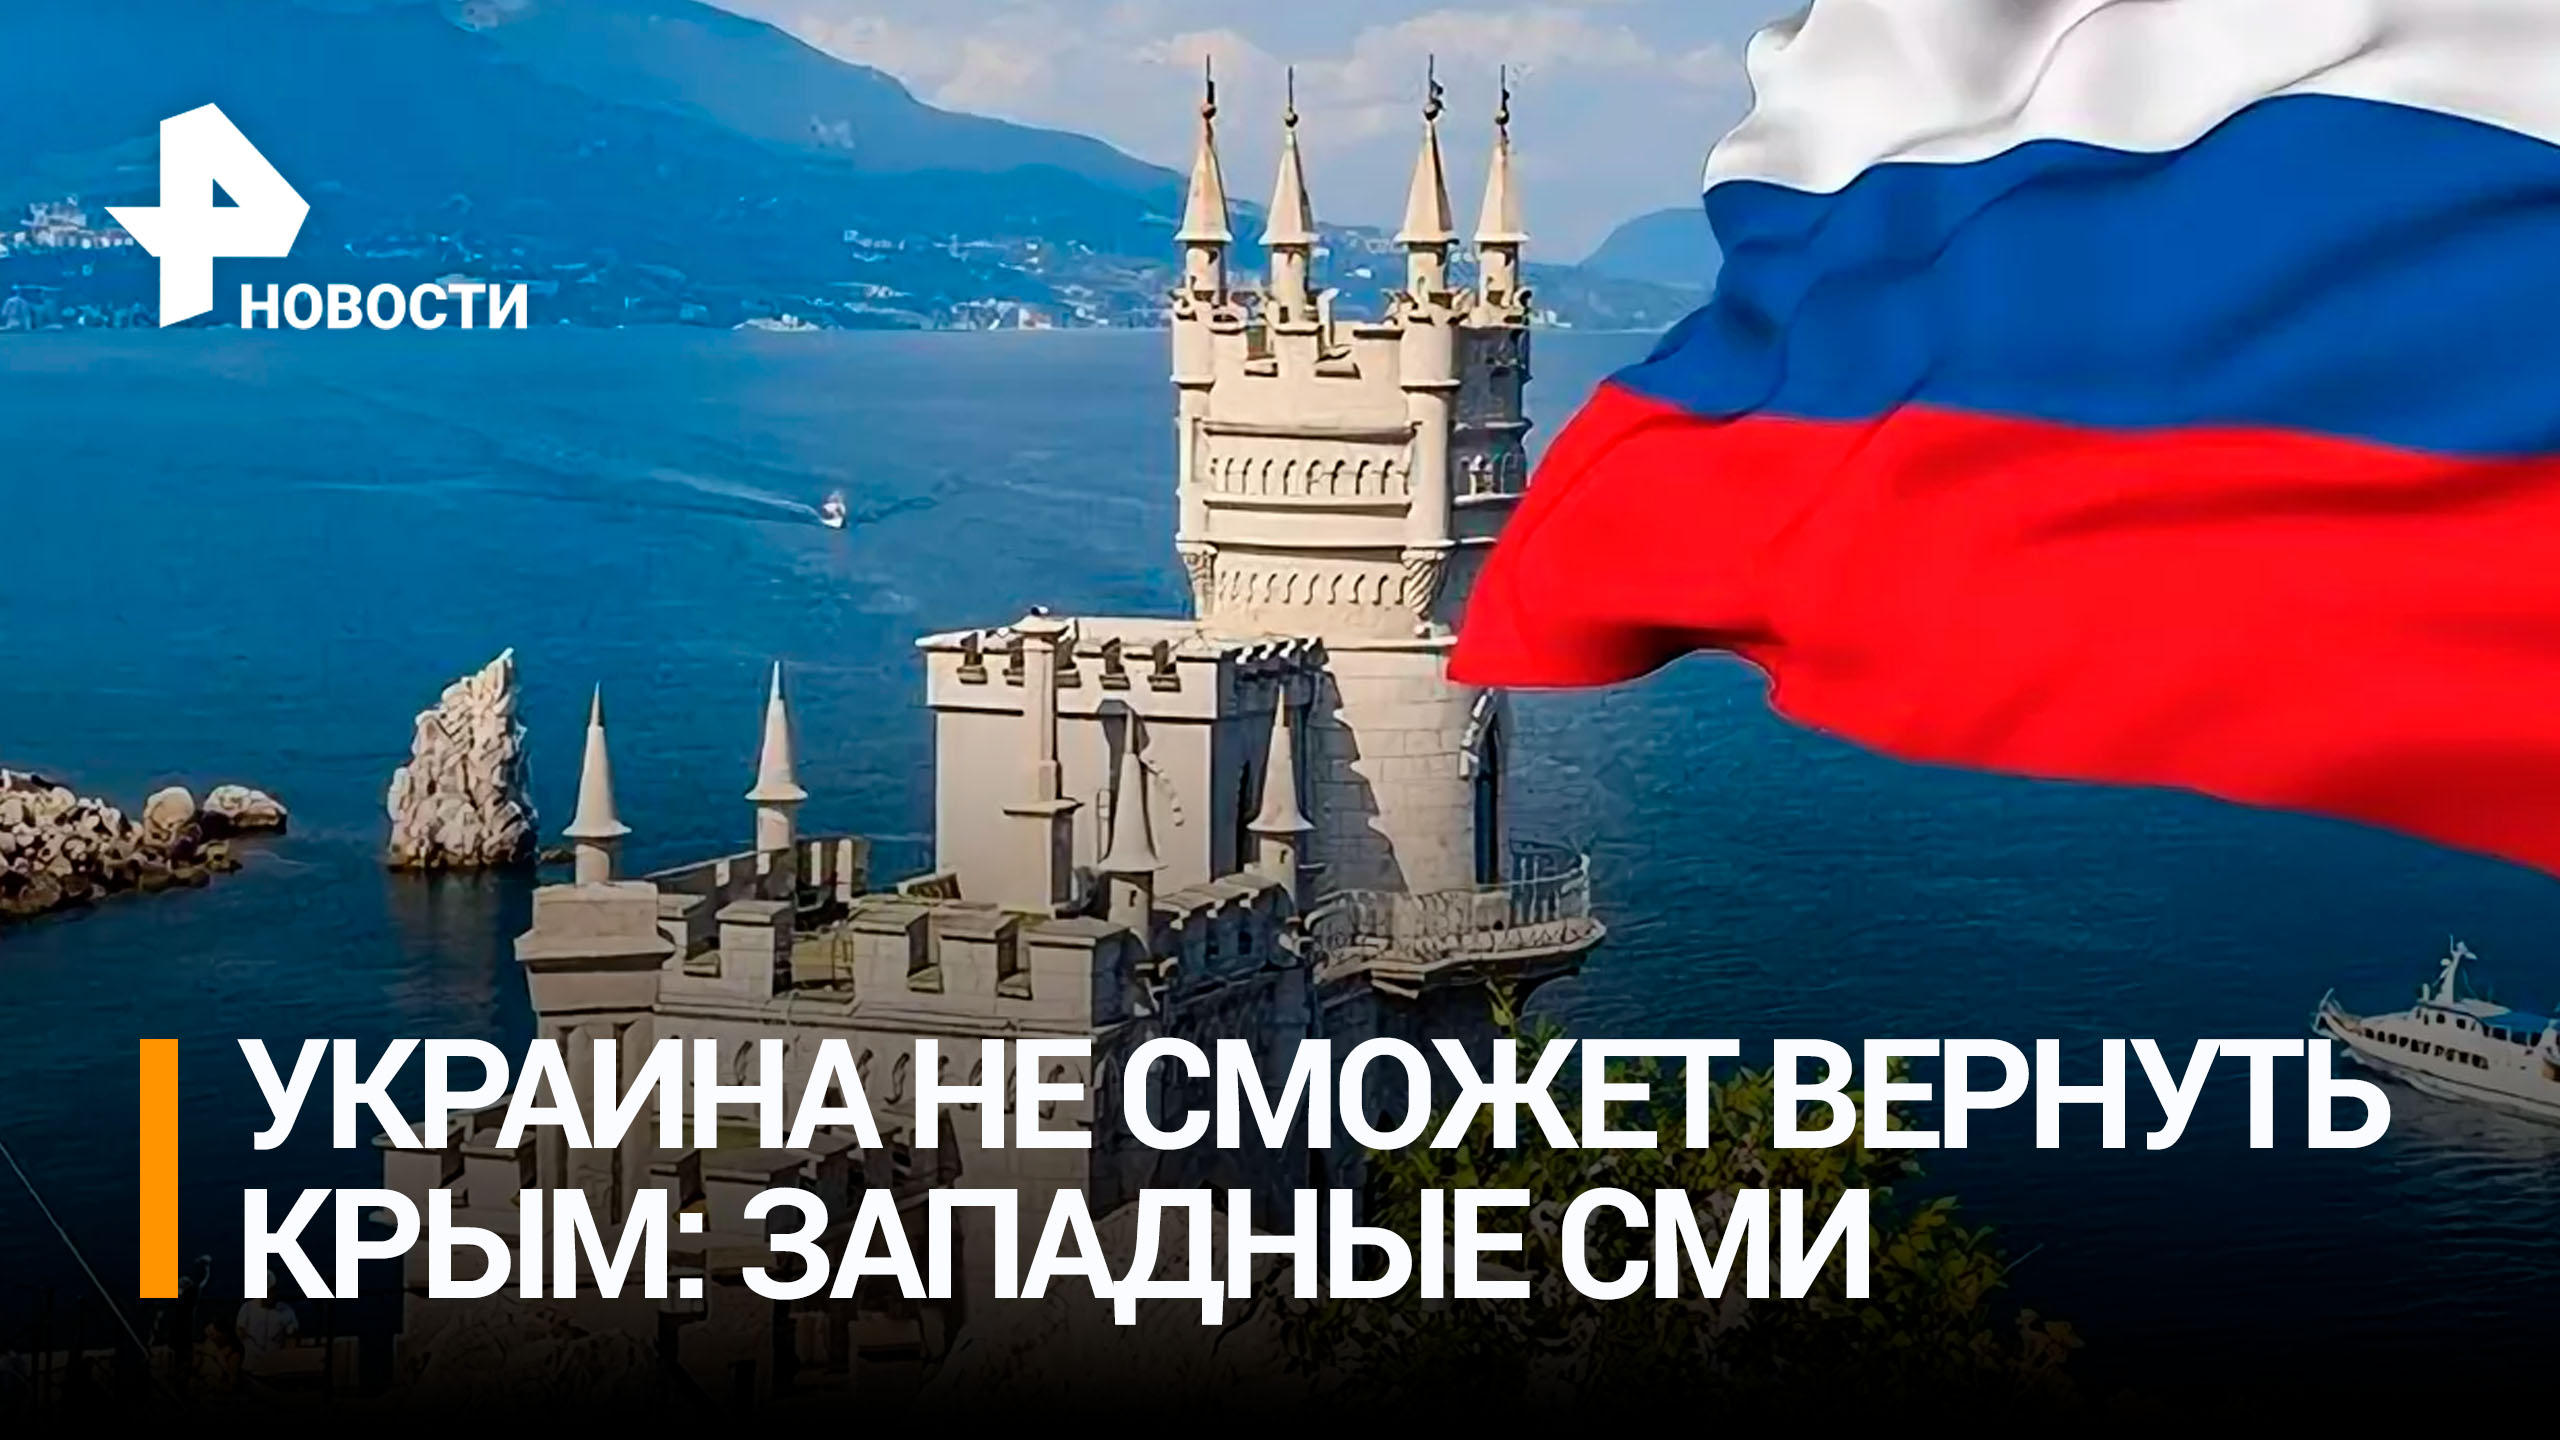 Politico: Пентагон скептически относится к возможному наступлению ВСУ на Крым / РЕН Новости